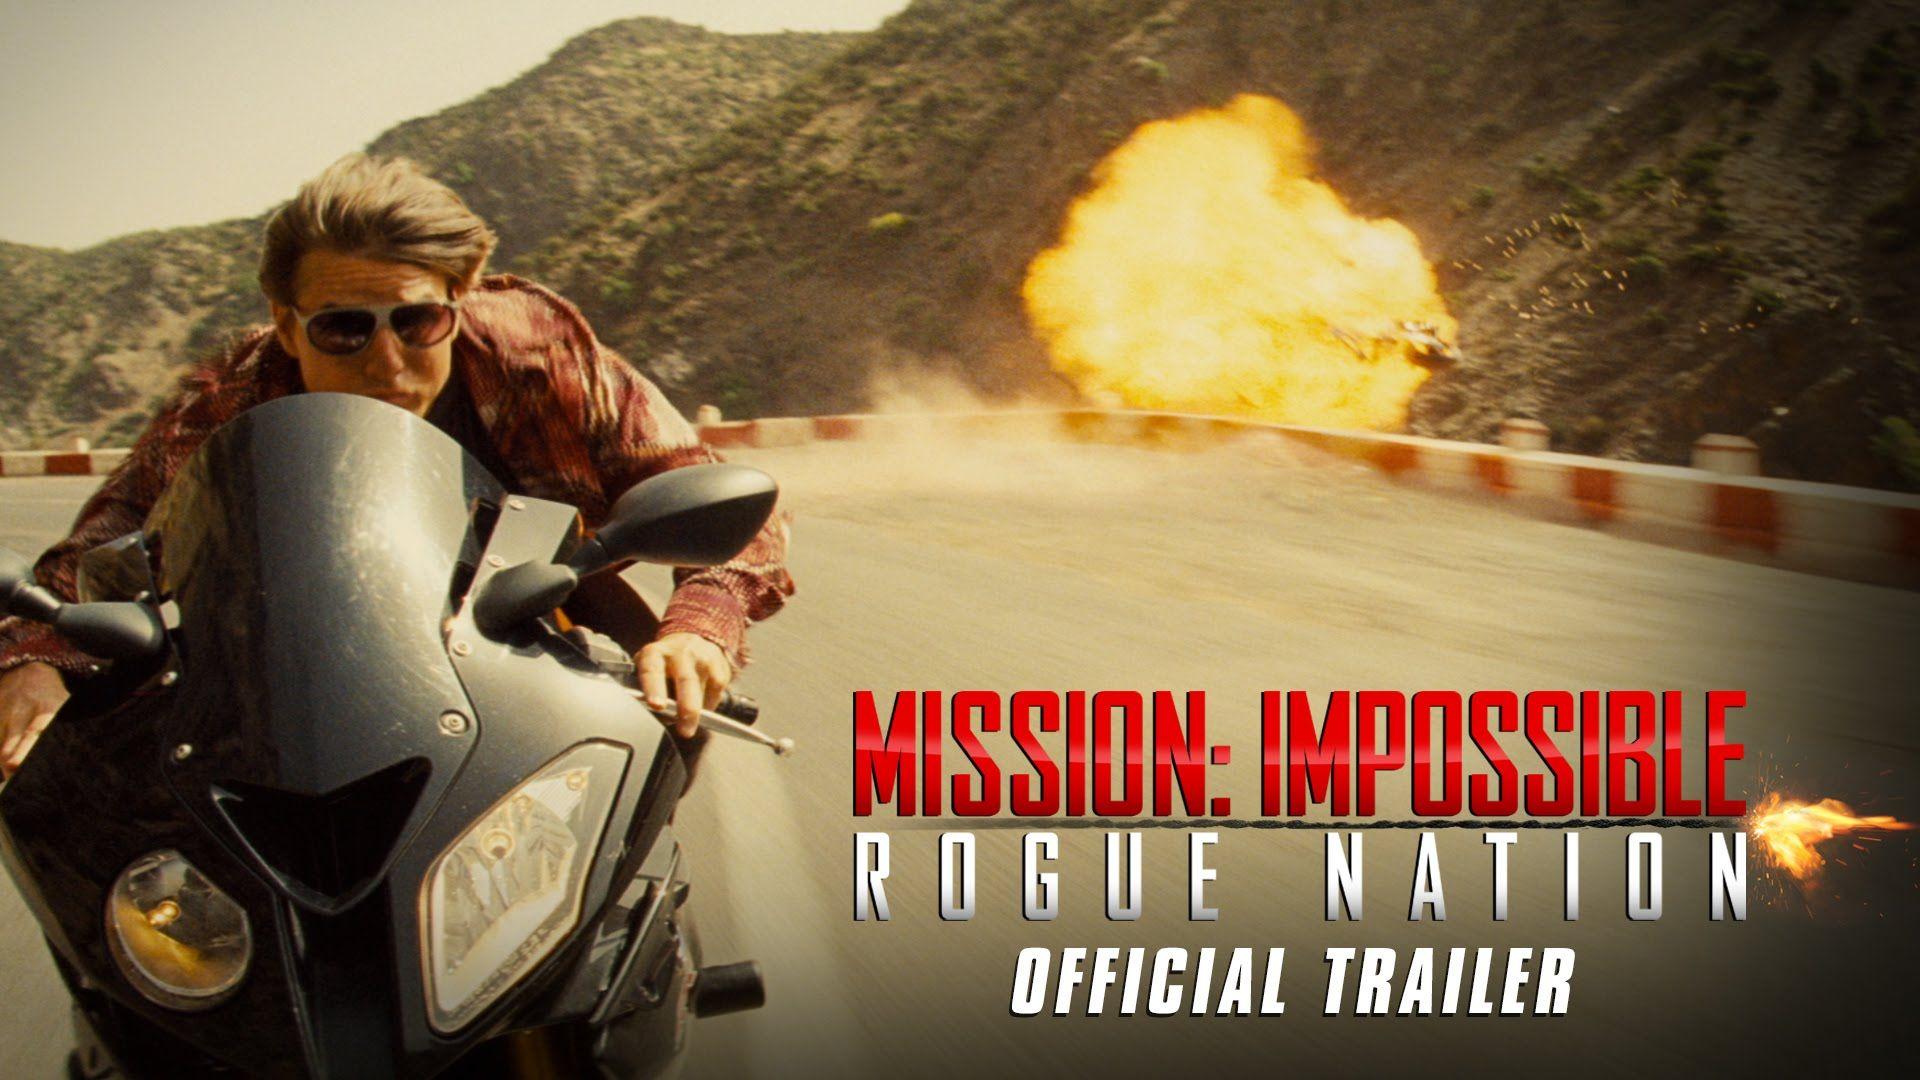 1920x1080 Mission: Impossible - Rogue Nation hình nền, Movie, HQ Hình nền Mission: Impossible - Rogue Nation.  Hình nền 4K 2019